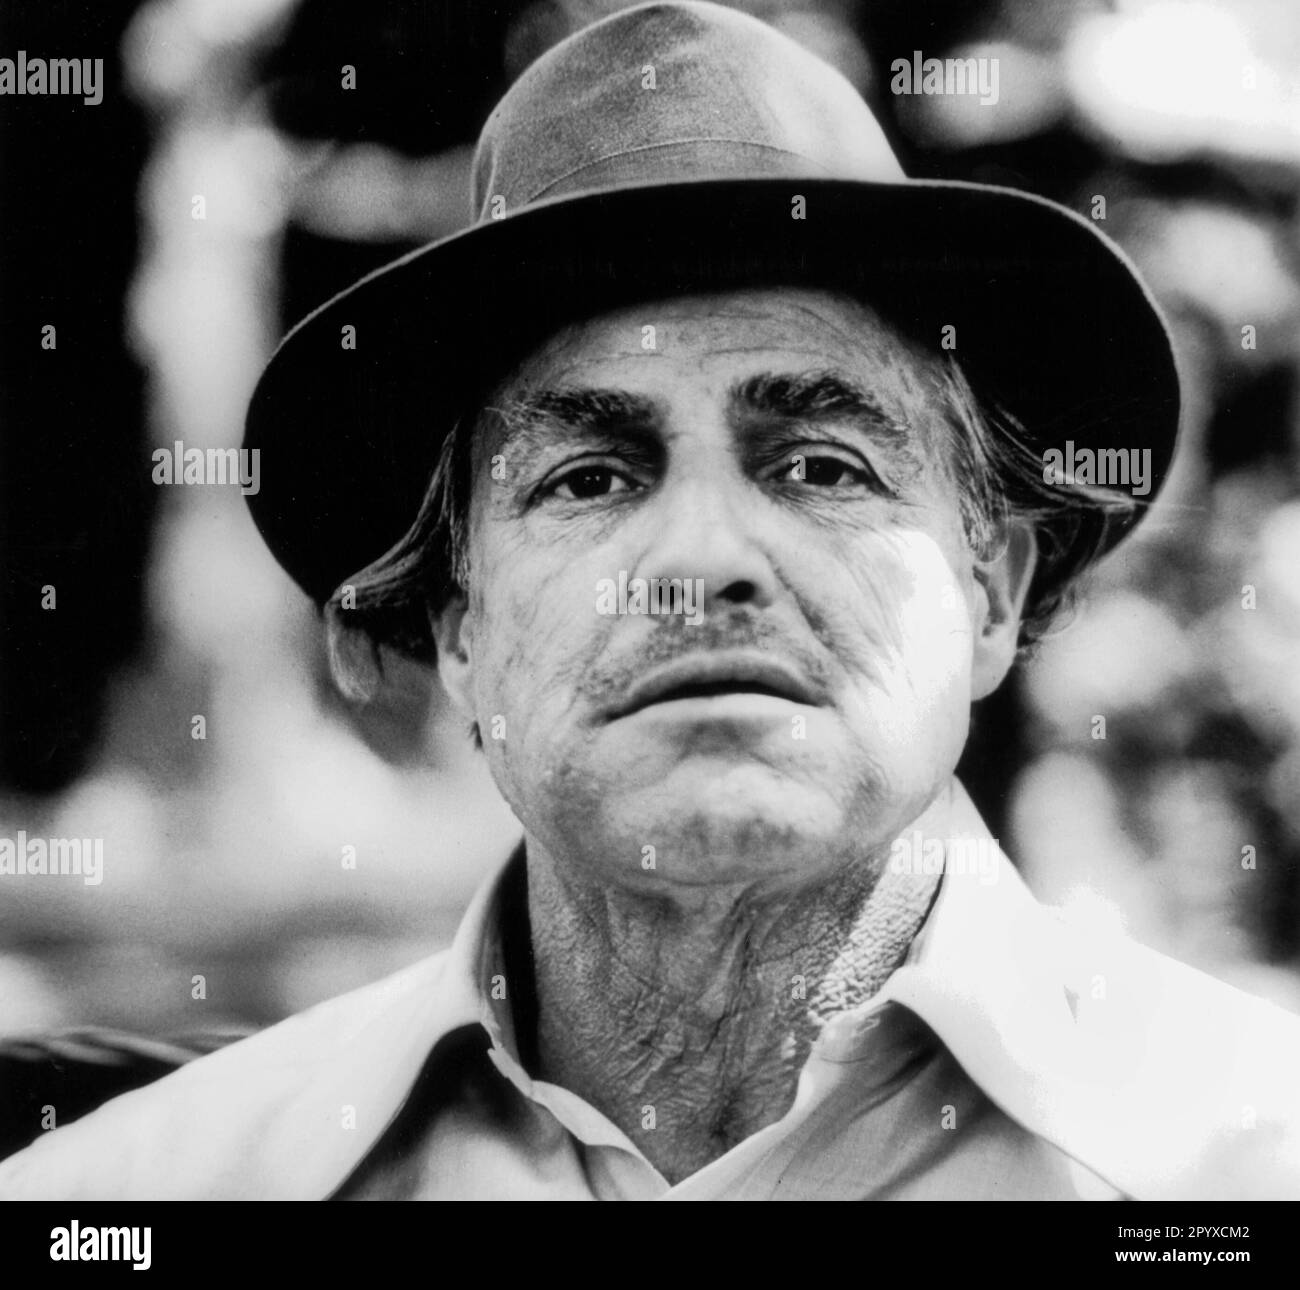 Marlon Brando dans le rôle de Don Vito Corleone dans le film "le parrain", partie 1, USA 1972, réalisé par Francis Coppola. [traduction automatique] Banque D'Images